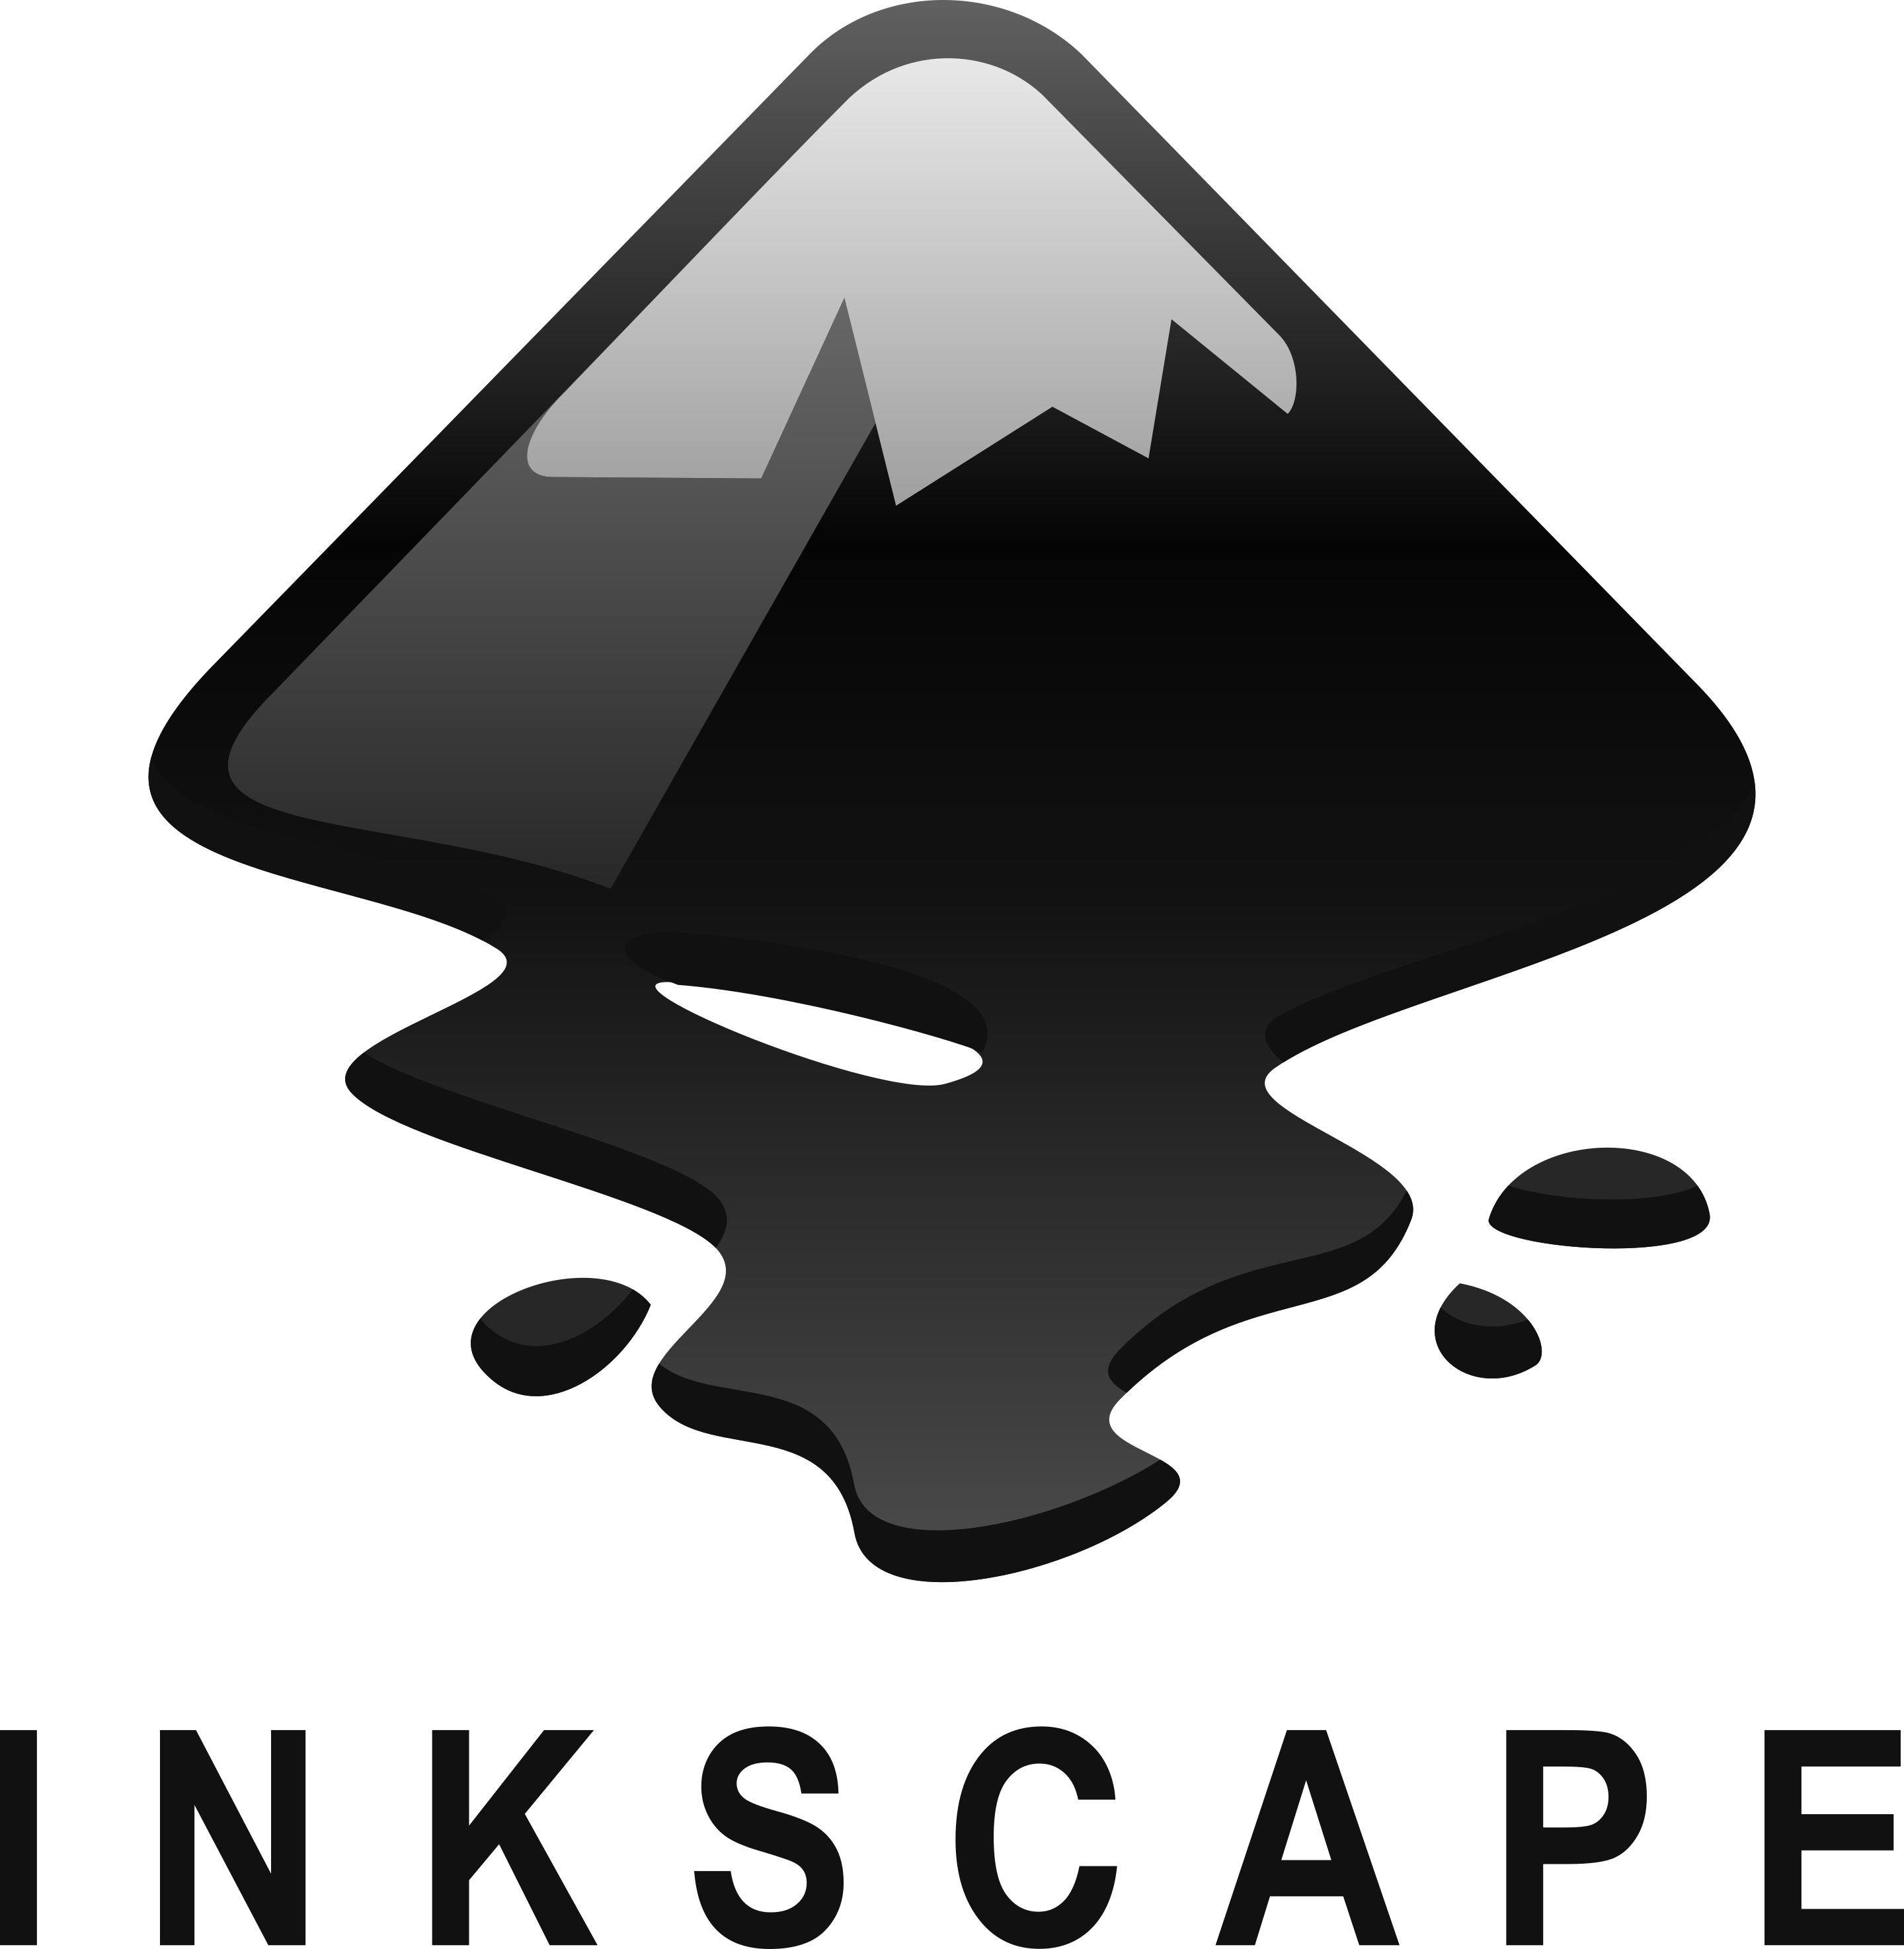 logo inkscape